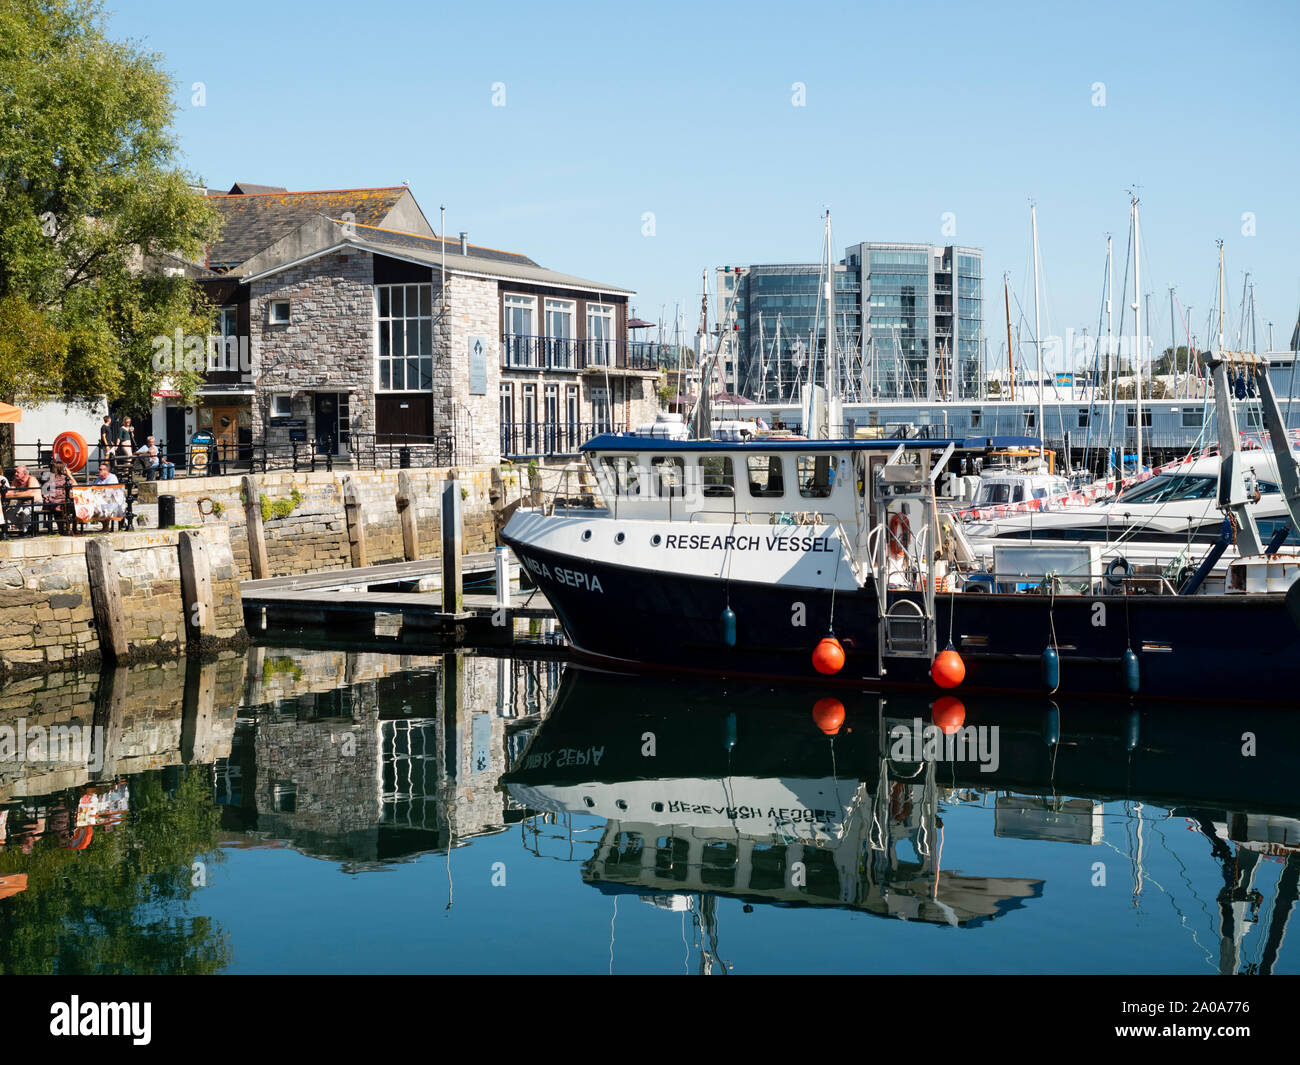 Asociación de Biología Marina del buque de investigación 'Sepia' en Sutton Harbour, Plymouth, Reino Unido Foto de stock